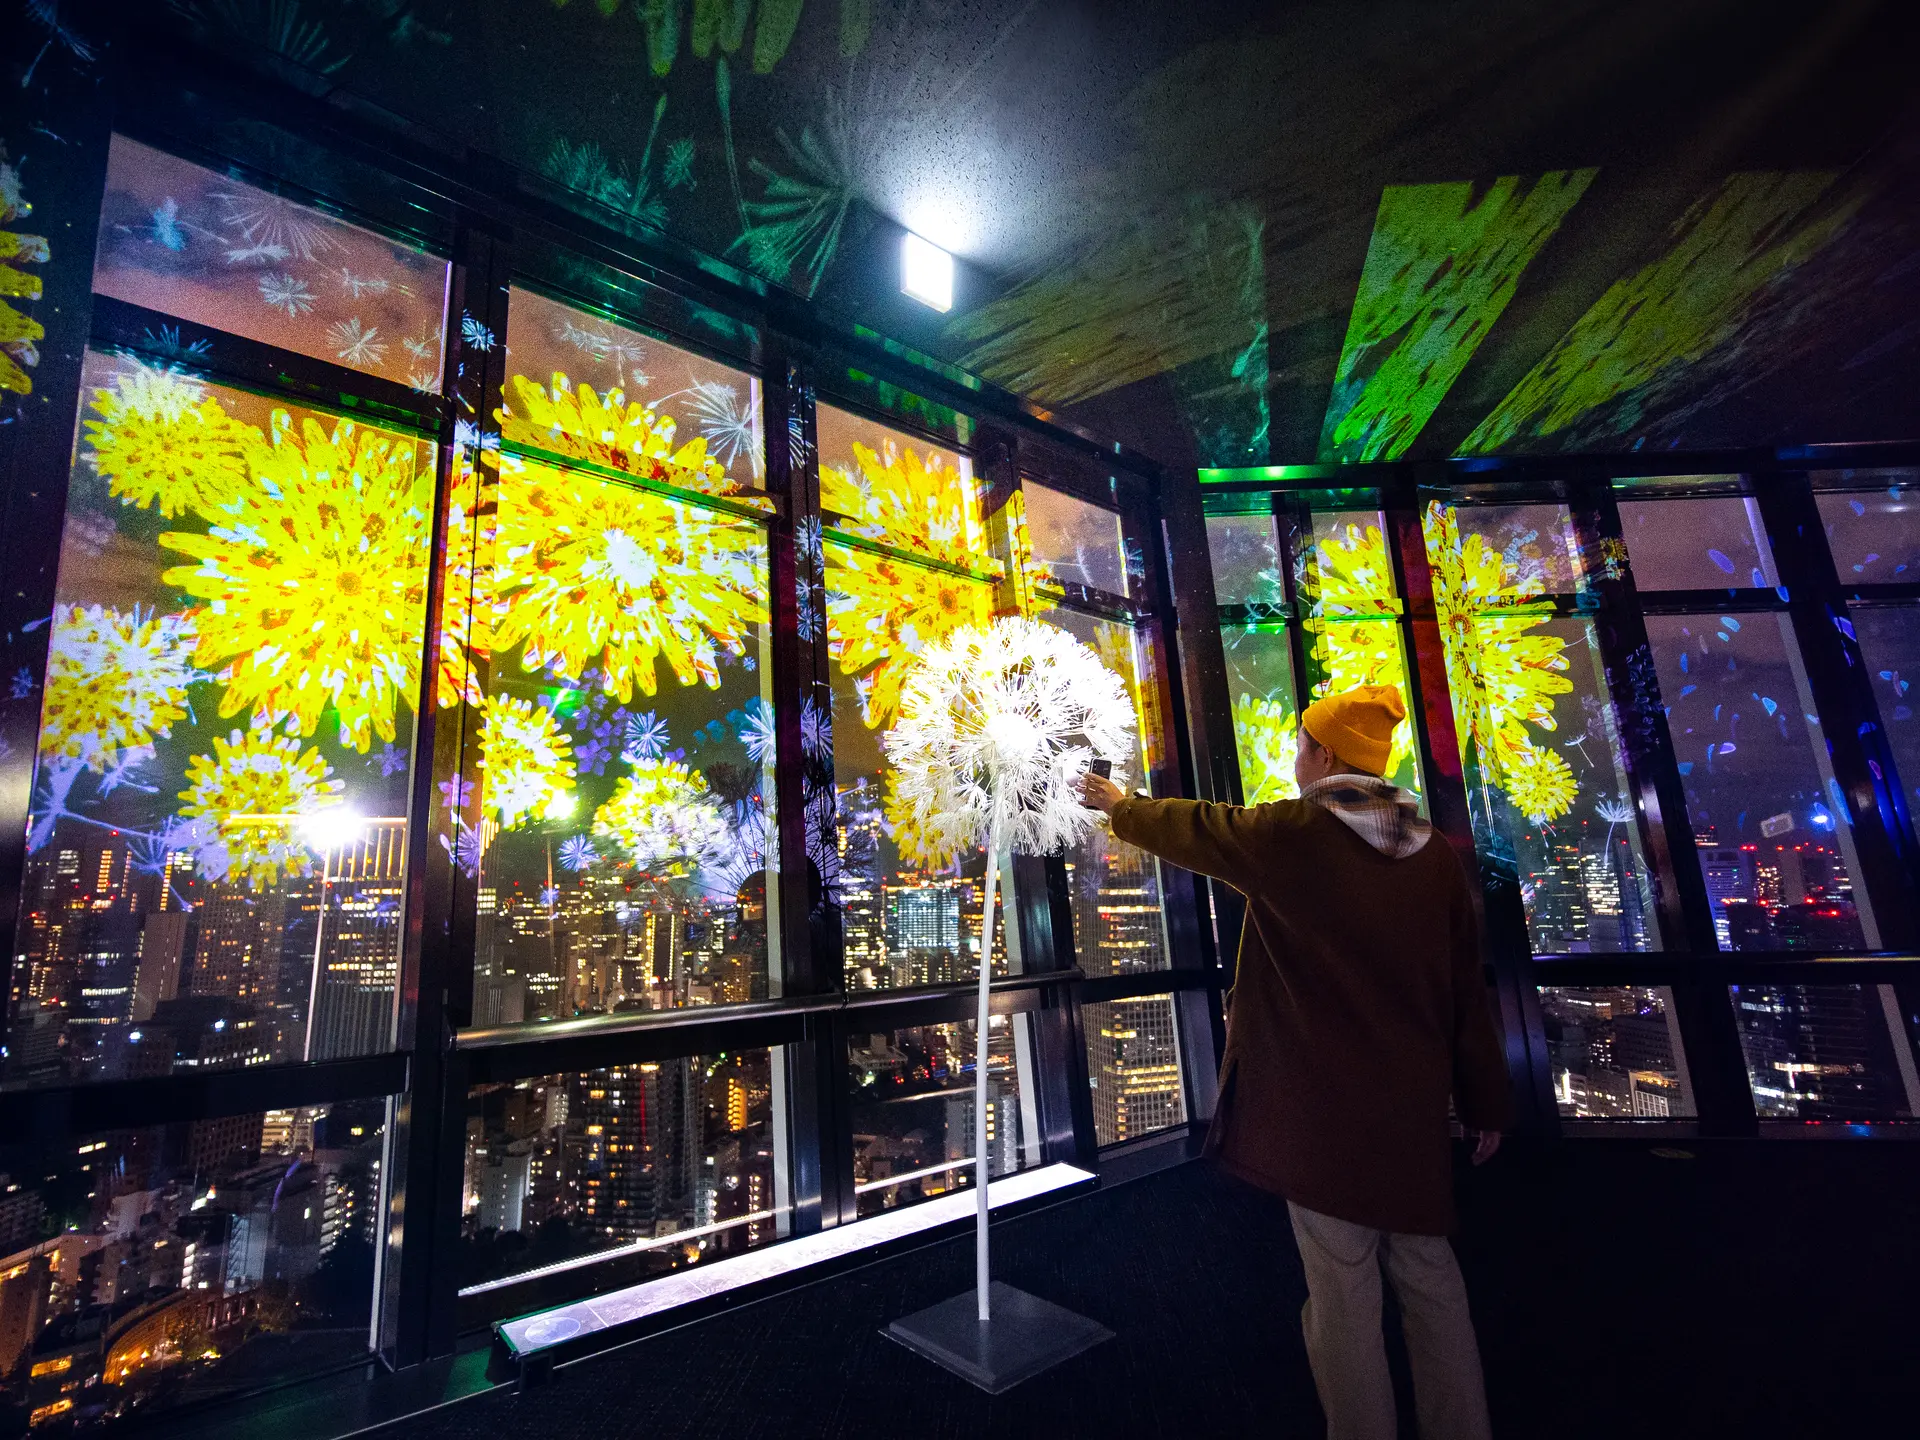 テーマはタンポポ 夜景に溶け込むプロジェクションマッピング 東京タワー にて展示 Holiday ホリデー